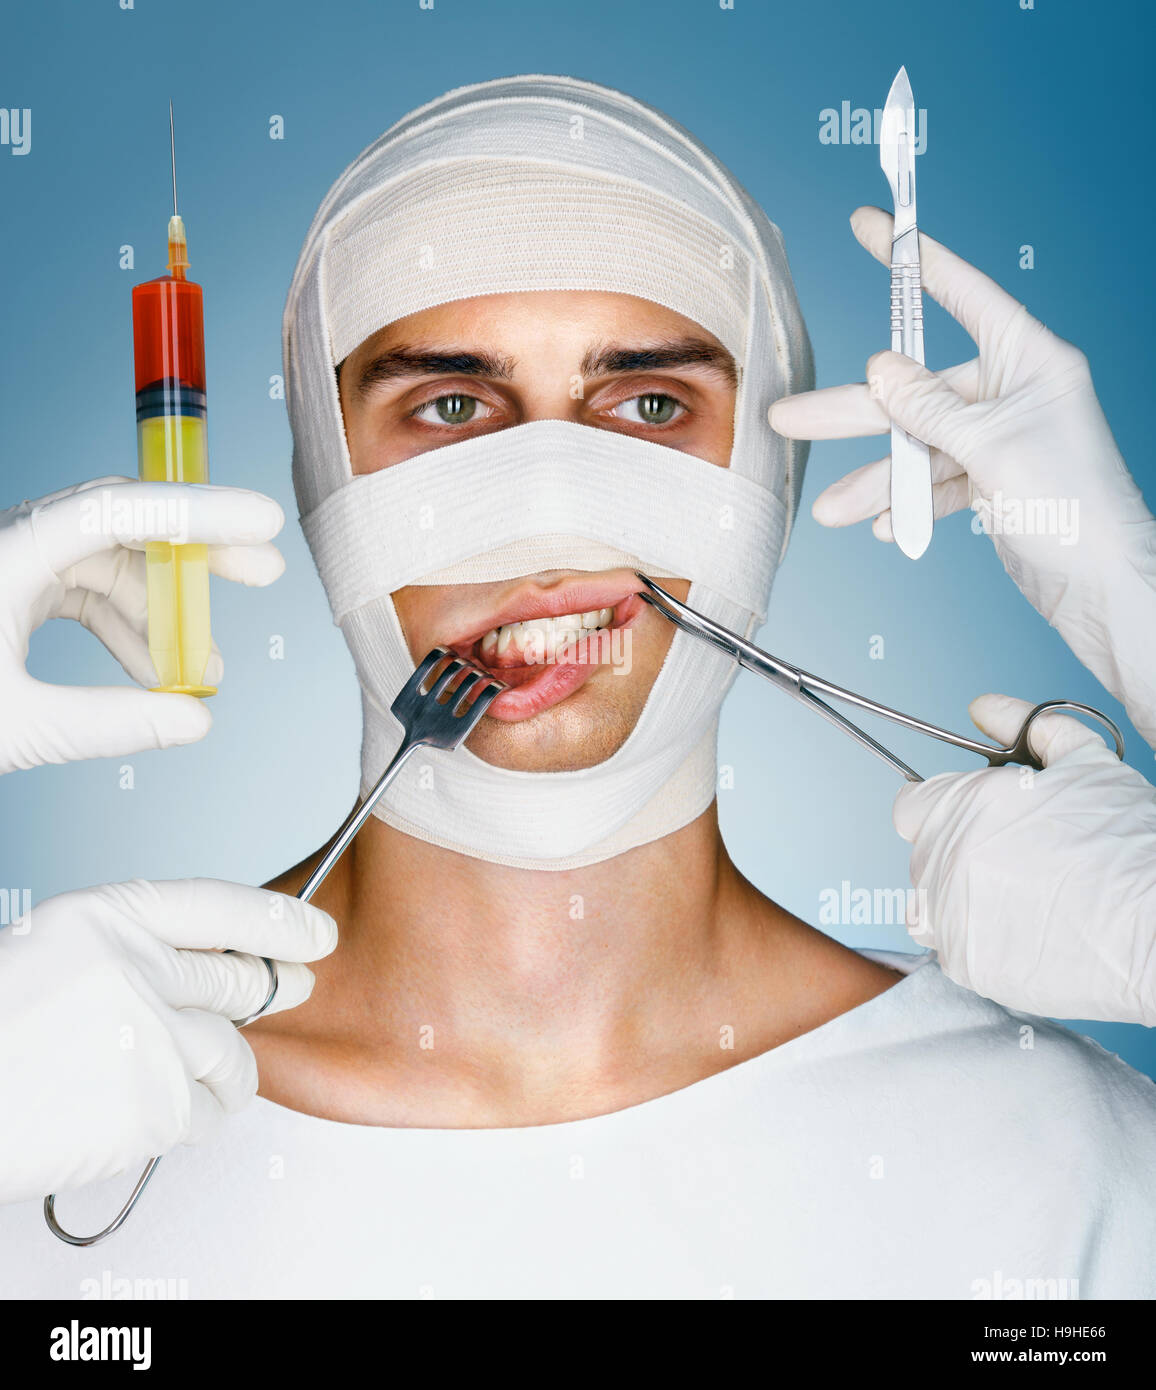 Víctima de la cirugía plástica. Hombre envuelto en vendajes médicos mientras doctores con jeringas, cierre quirúrgico, gancho y escalpelos cerca de su cara. Concepto de belleza Foto de stock